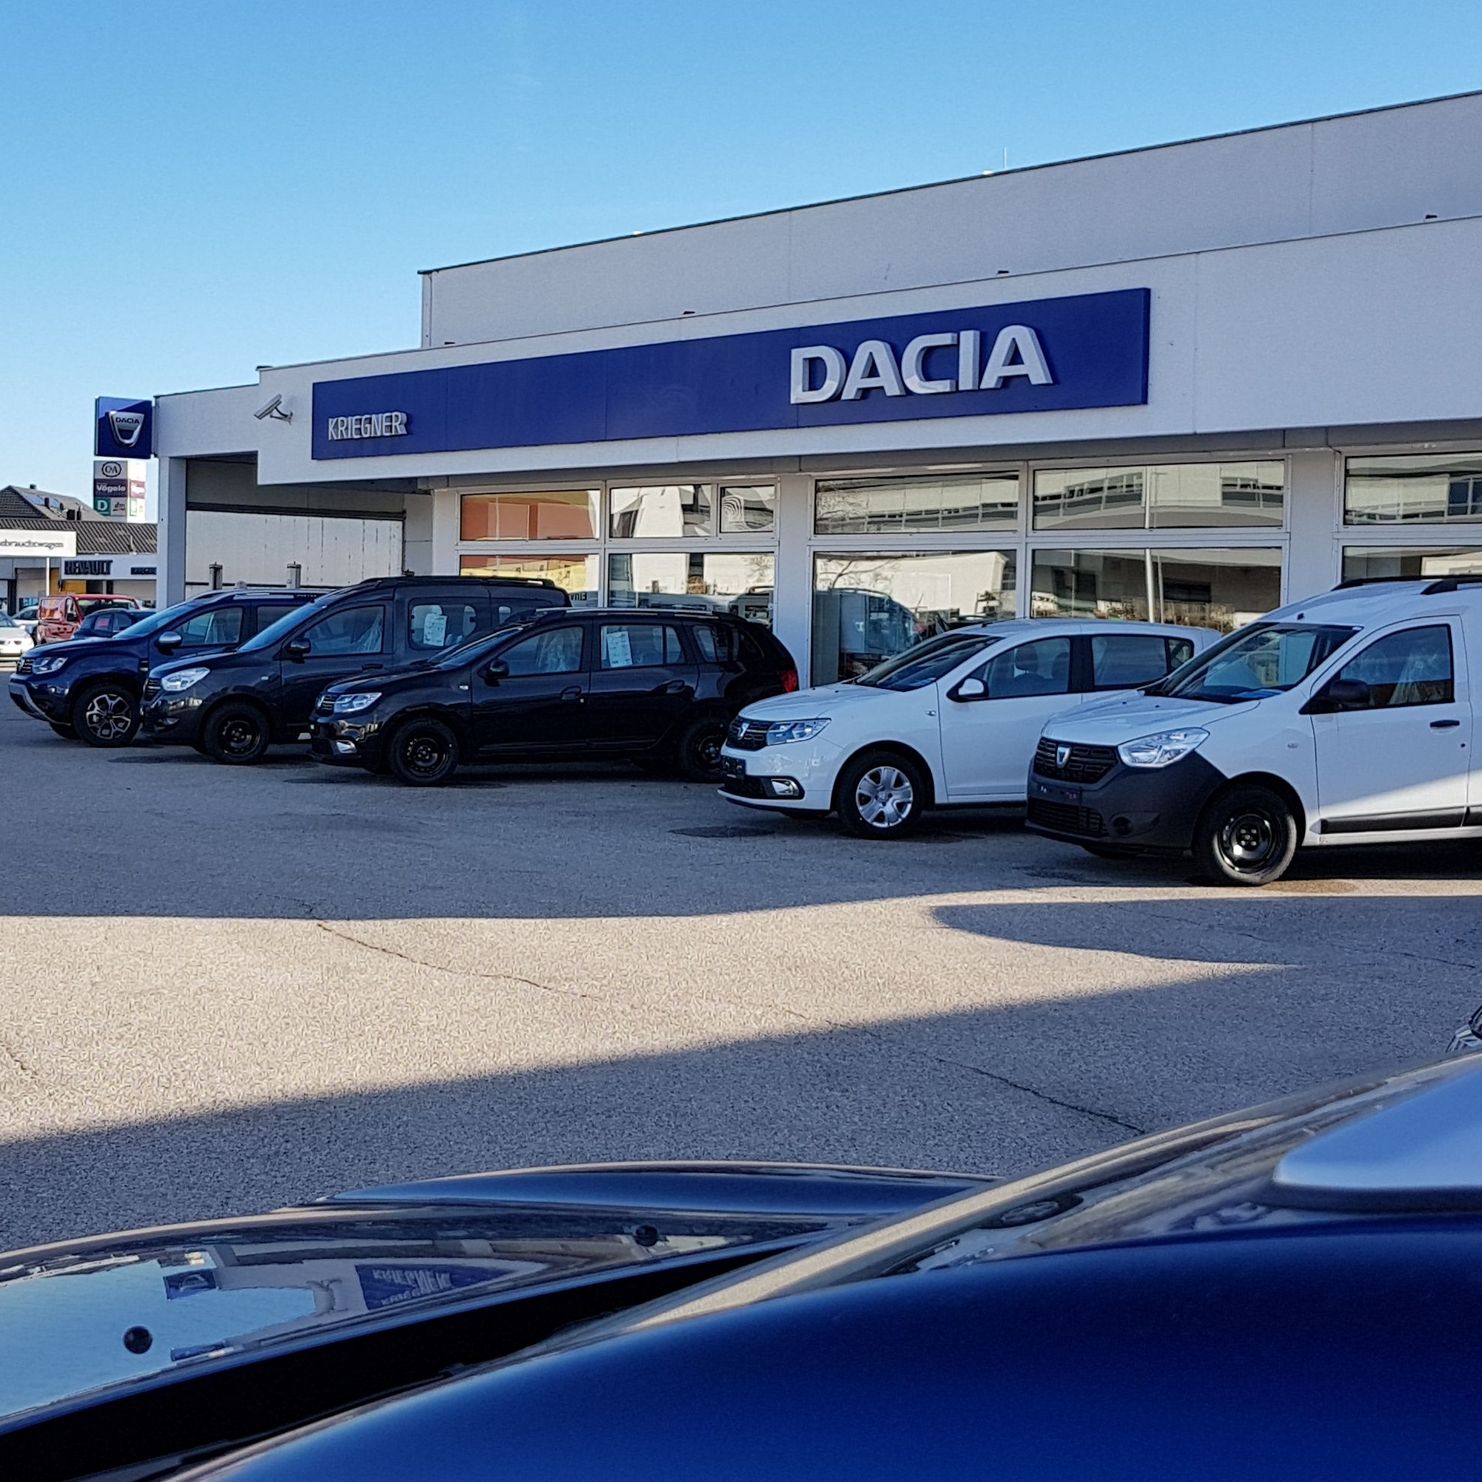 Dacia Auto Kriegner GmbH. Grieskirchen, Autohandel Autowerkstatt Oberösterreich Renault Dacia Neuwagen Gebrauchtwagen